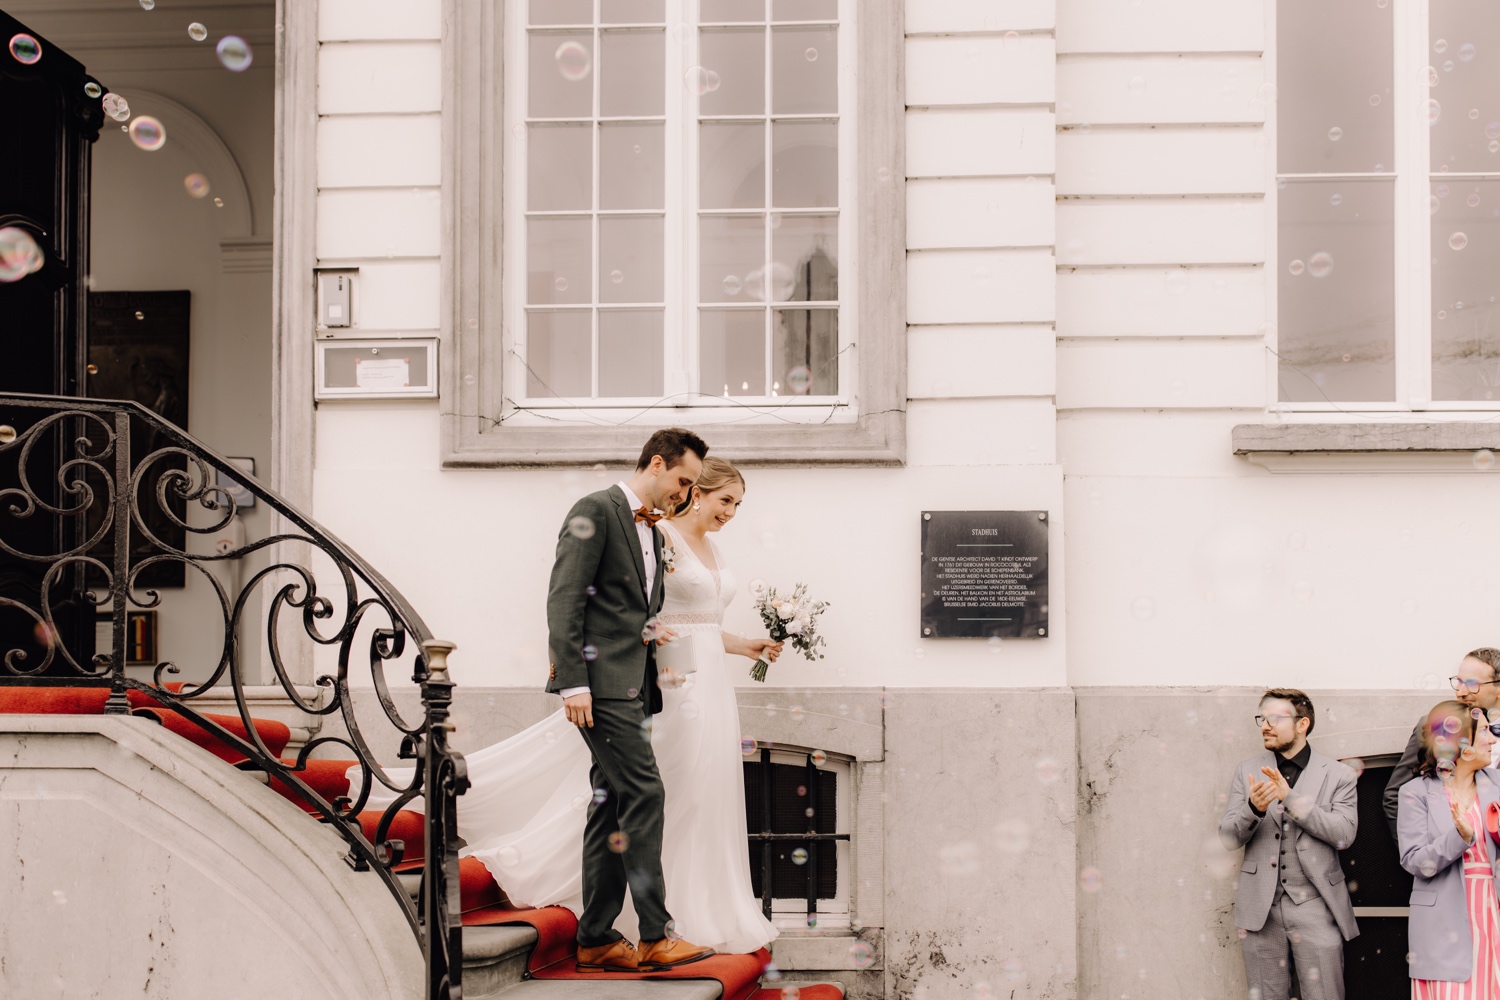 Huwelijksfotograaf Limburg - bruidspaar wandelt uit gemeentehuis